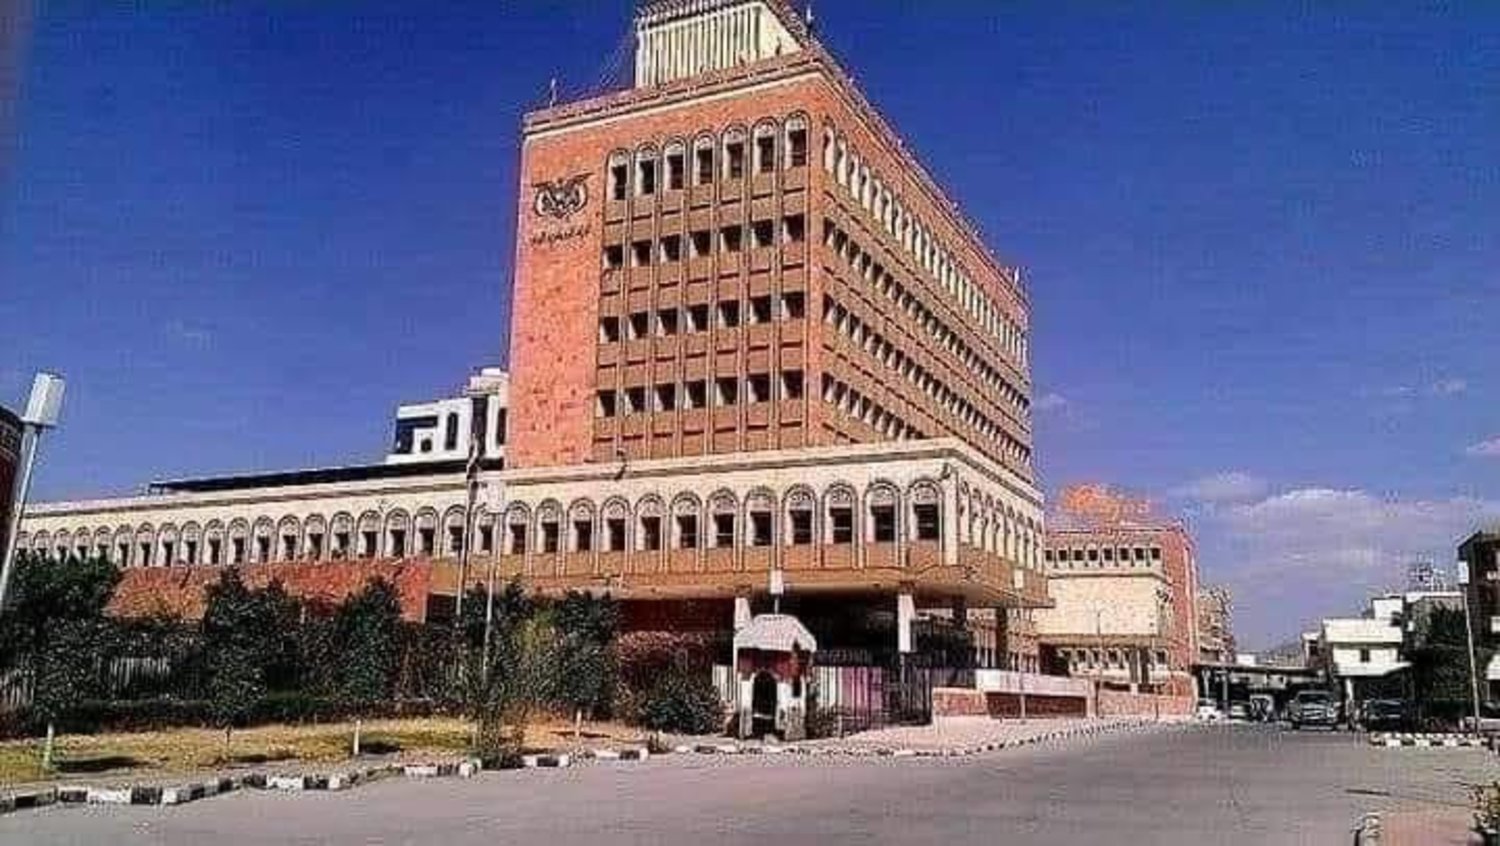 فرع البنك المركزي في صنعاء أداة لمصادرة أموال المودعين (إعلام حوثي) 